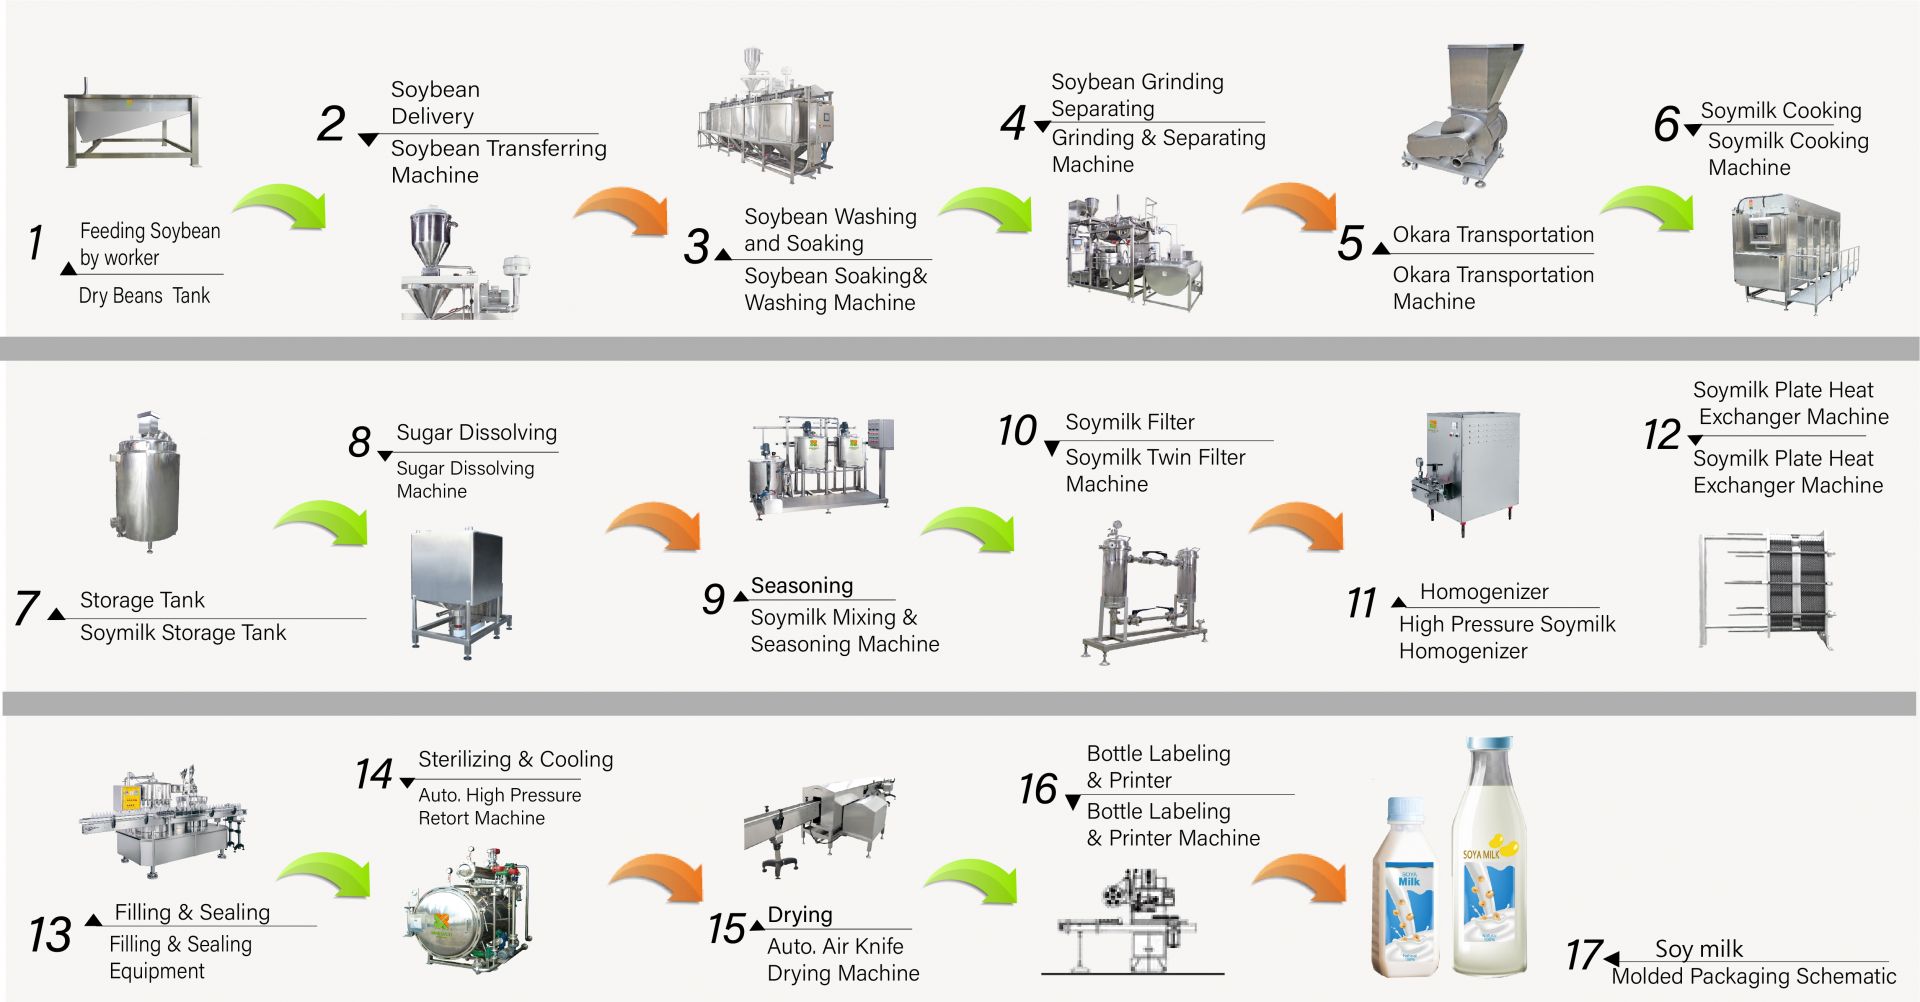 El proceso de hacer leche de soja en la fábrica, Cómo hacer leche de soja, Producir leche de soja, diagrama de flujo de leche de soja, Proceso de elaboración de leche de soja, Proceso de fabricación de leche de soja, proceso de leche de soja, diagrama de flujo del proceso de leche de soja, Flujo de proceso de elaboración de leche de soja, Proceso de procesamiento de leche de soja, producción de leche de soja, diagrama de flujo de producción de leche de soja, proceso de producción de leche de soja, diagrama de flujo de procesamiento de soja, máquina automática de leche de soja, máquina automática para hacer leche de soja, fabricante de tofu fácil, producción industrial de leche de soja, fabricación industrial de leche de soja, máquina industrial de leche de soja, Máquina industrial de tofu, máquina de leche vegetal, máquina de producción de leche vegetal, producción de leche de soja, Máquina de bebidas de soja, Línea de producción de bebidas de soja, Máquina de bebidas de soja, máquina comercial de leche de soja y tofu, máquina para hacer leche de soja y tofu, maquinaria y equipo para bebidas de leche de soja, Máquina de cocinar leche de soja, fábrica de leche de soja, máquina de leche de soja, máquina de leche de soja comercial, Máquina de leche de soja hecha en Taiwán, Maquinaria de leche de soja, Maquinaria y equipo de leche de soja, Fabricante de leche de soja, Máquina para hacer leche de soja, fabricantes de leche de soja, Producción de leche de soja, equipo de producción de leche de soja, fábrica de producción de leche de soja, línea de producción de leche de soja, precio de la máquina para hacer leche de soja, máquina procesadora de soja, fábrica de leche de soja, máquina de leche de soja